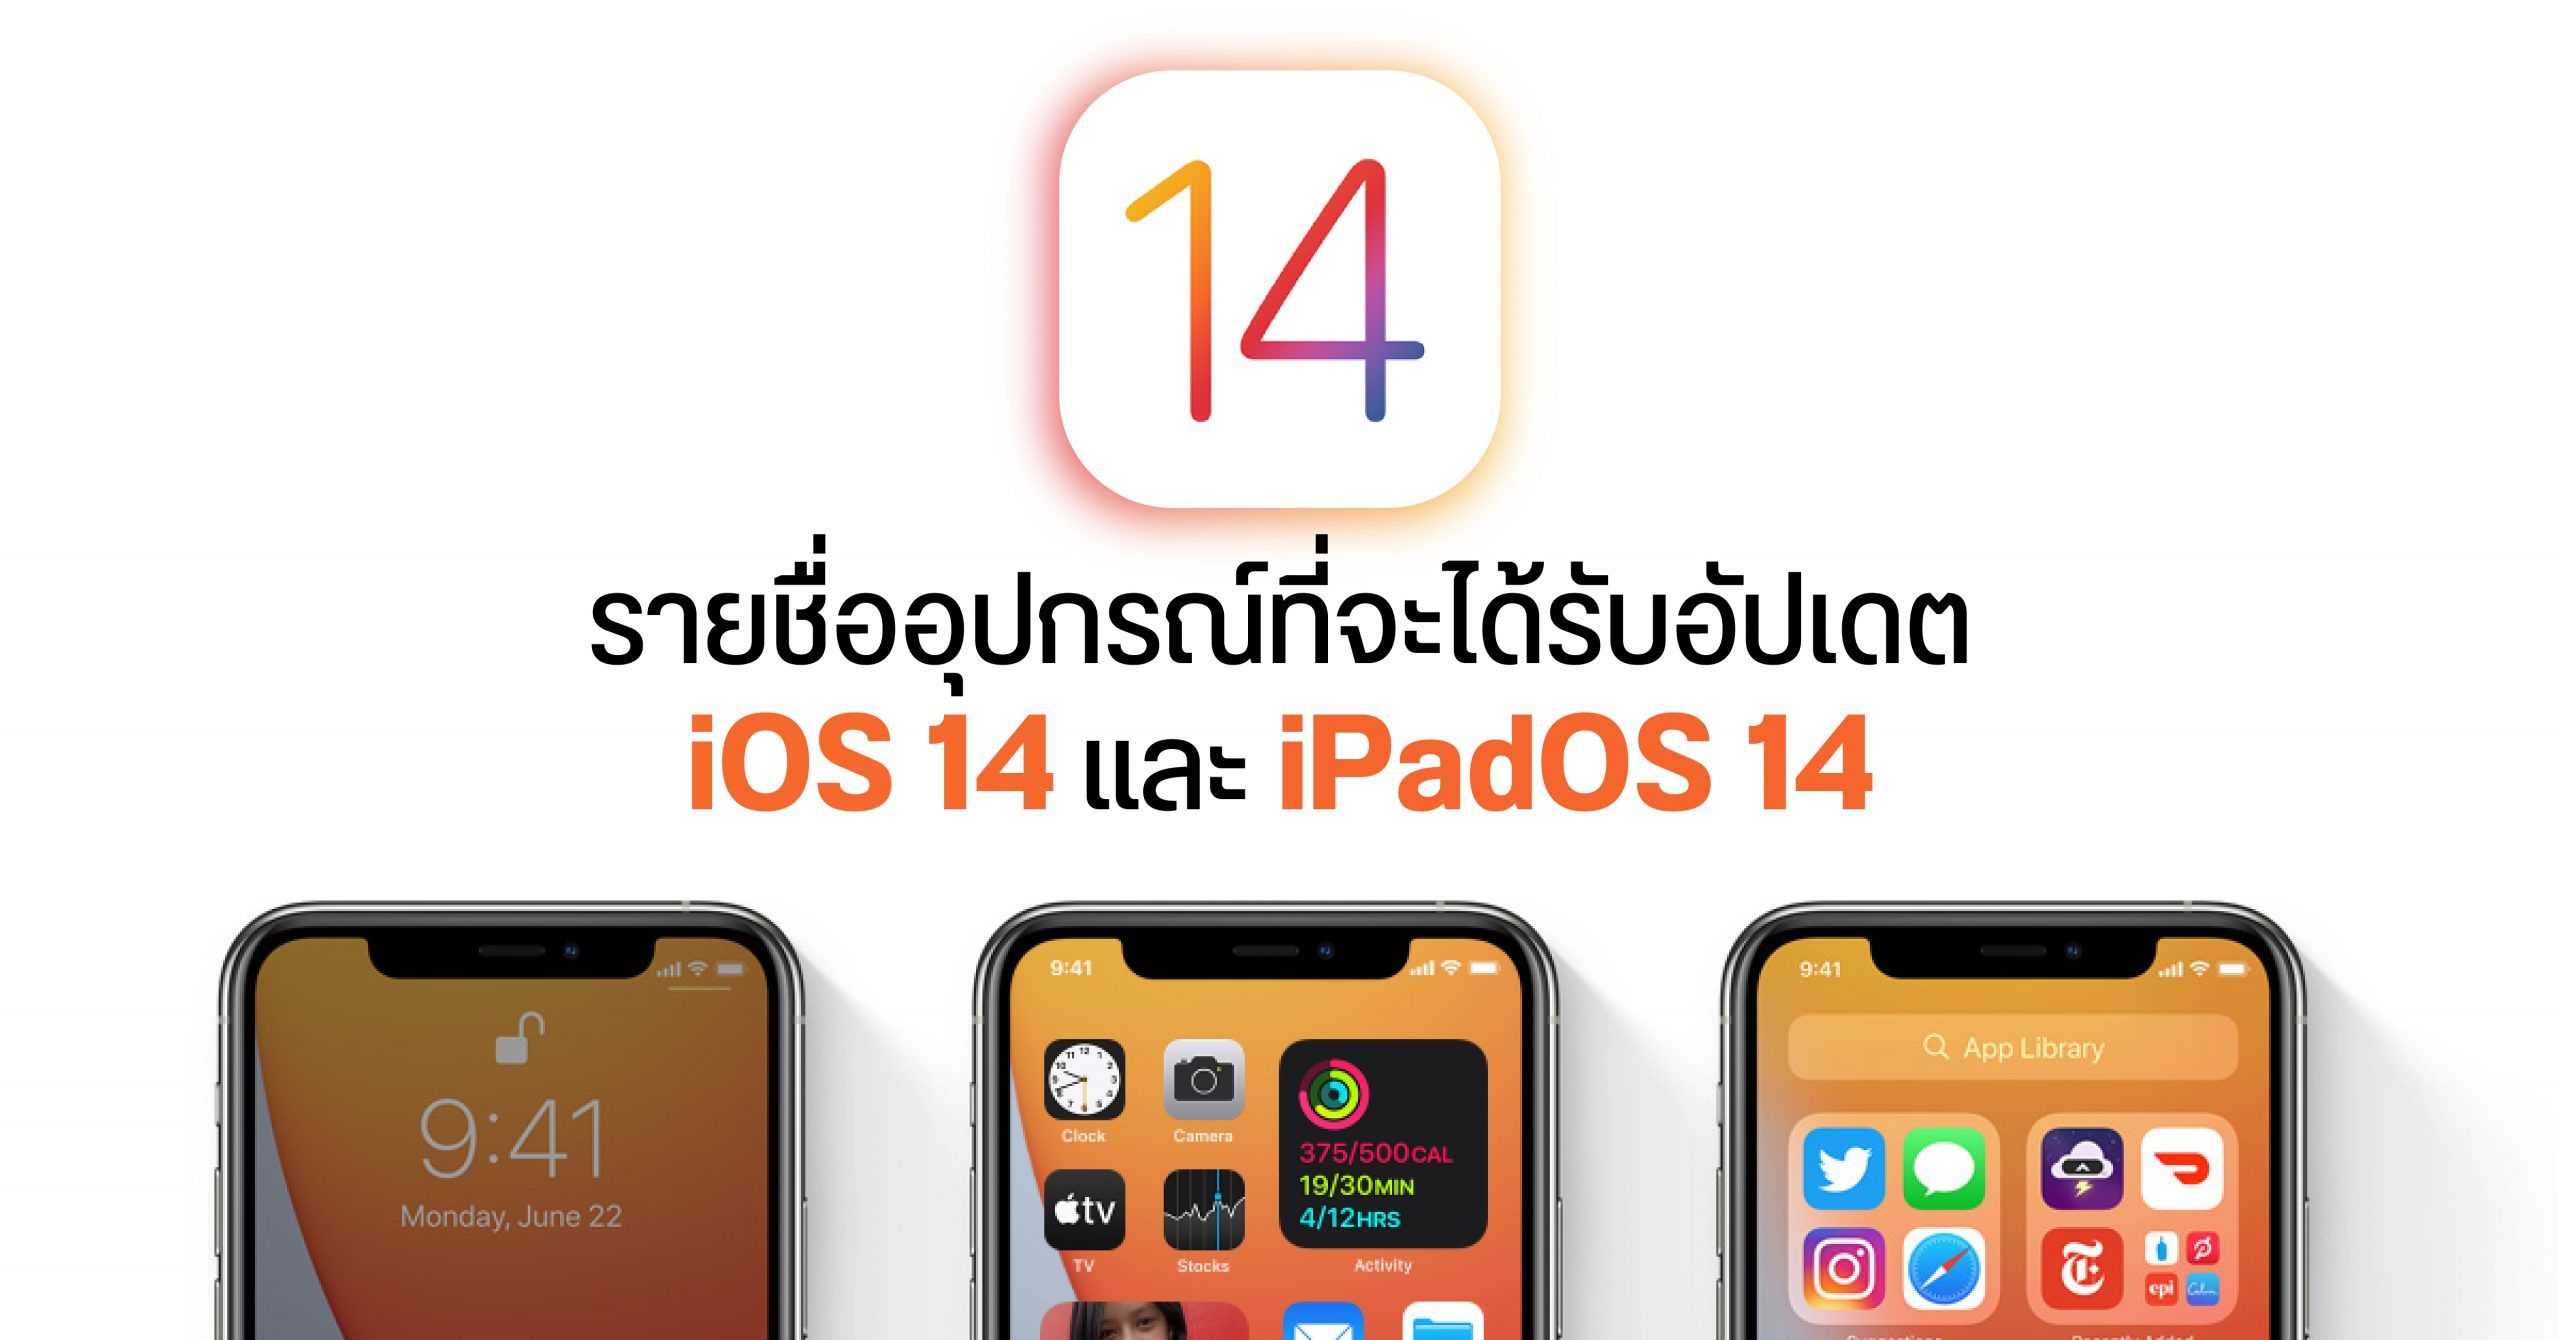 รุ่นไหนได้ไปต่อ? เผยรายชื่อ iPhone และ iPad รุ่นที่จะได้รับการอัพเดต iOS 14 และ iPadOS 14